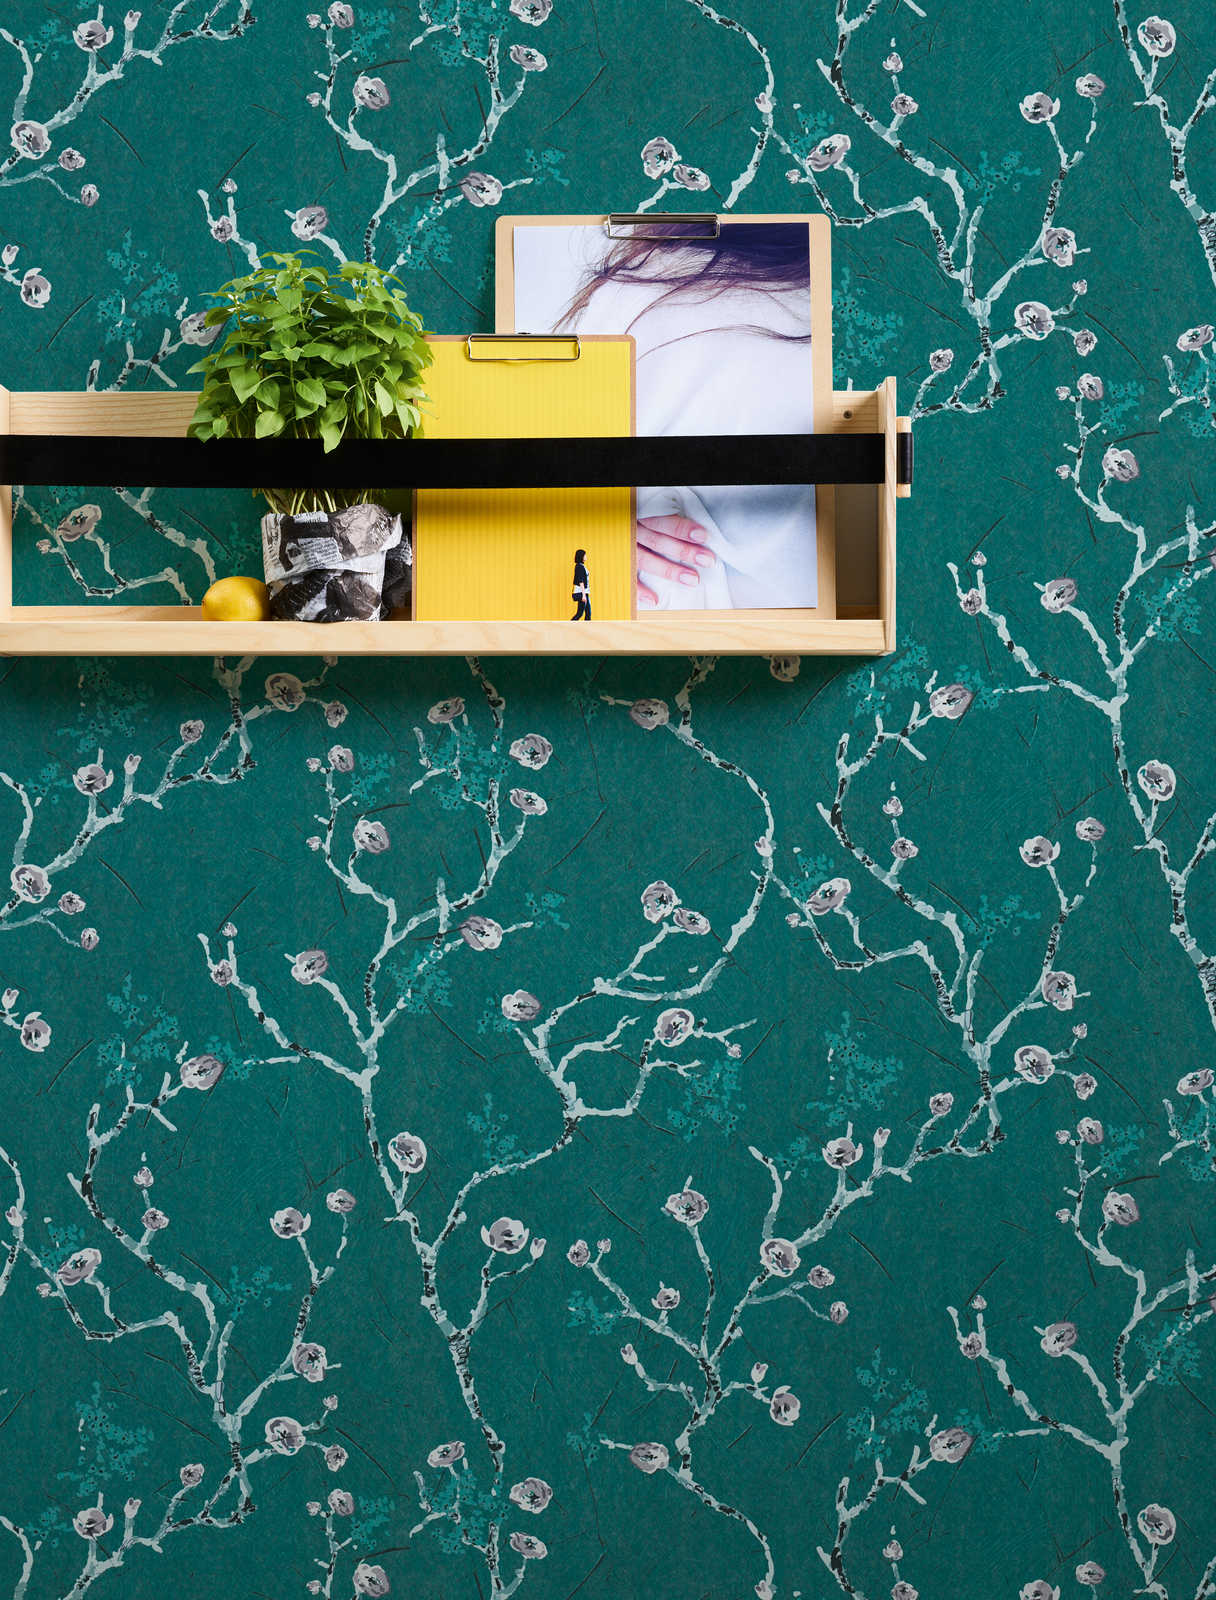             Papier peint vert foncé à motif floral de style asiatique
        